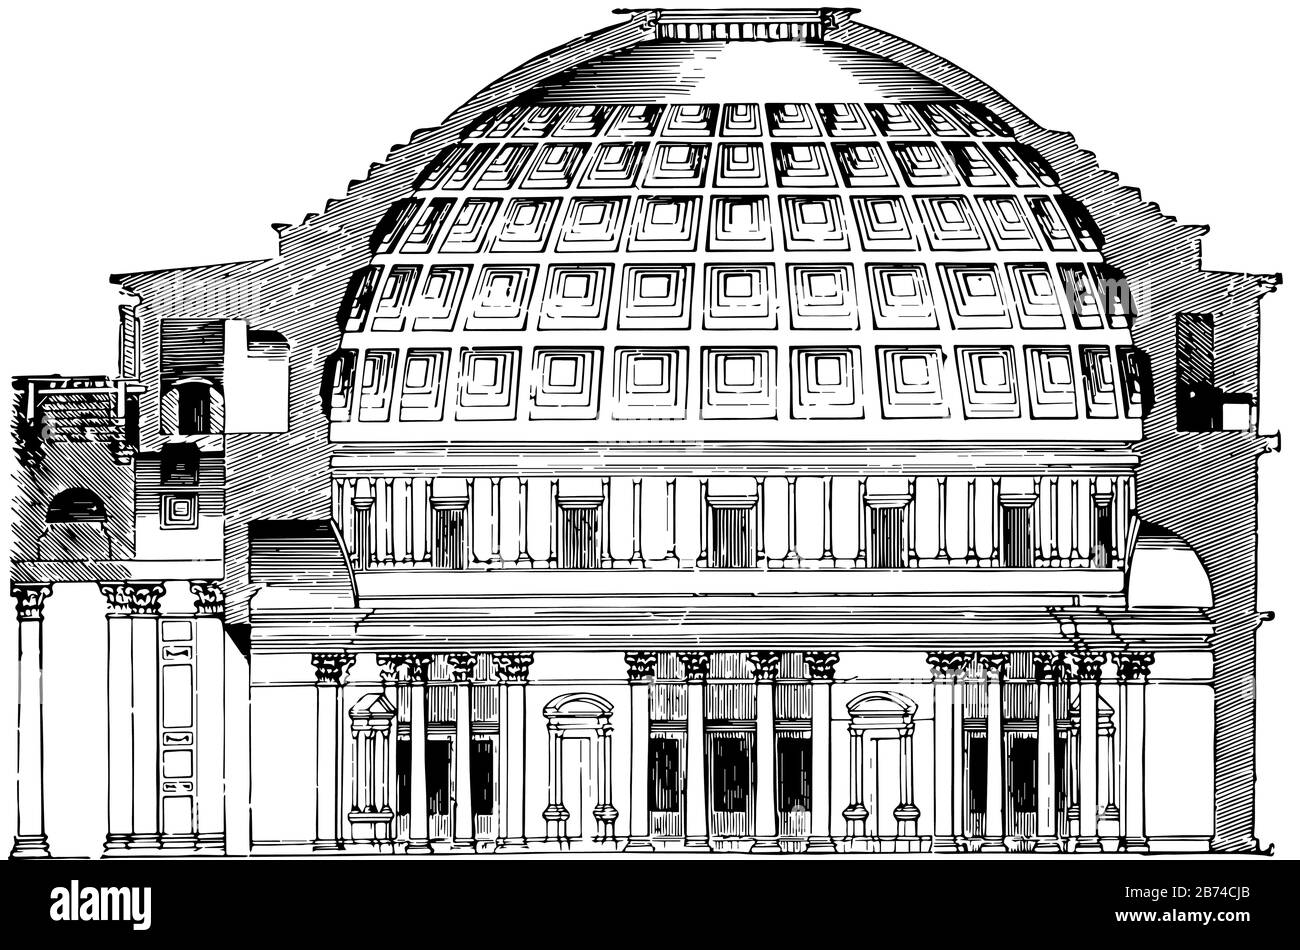 Pantheon, il monumento più bello di questo tempo è il Pantheon, uno dei più grandi edifici, il mondo antico, il Tempio o come una sala annessa, linea d'epoca Illustrazione Vettoriale